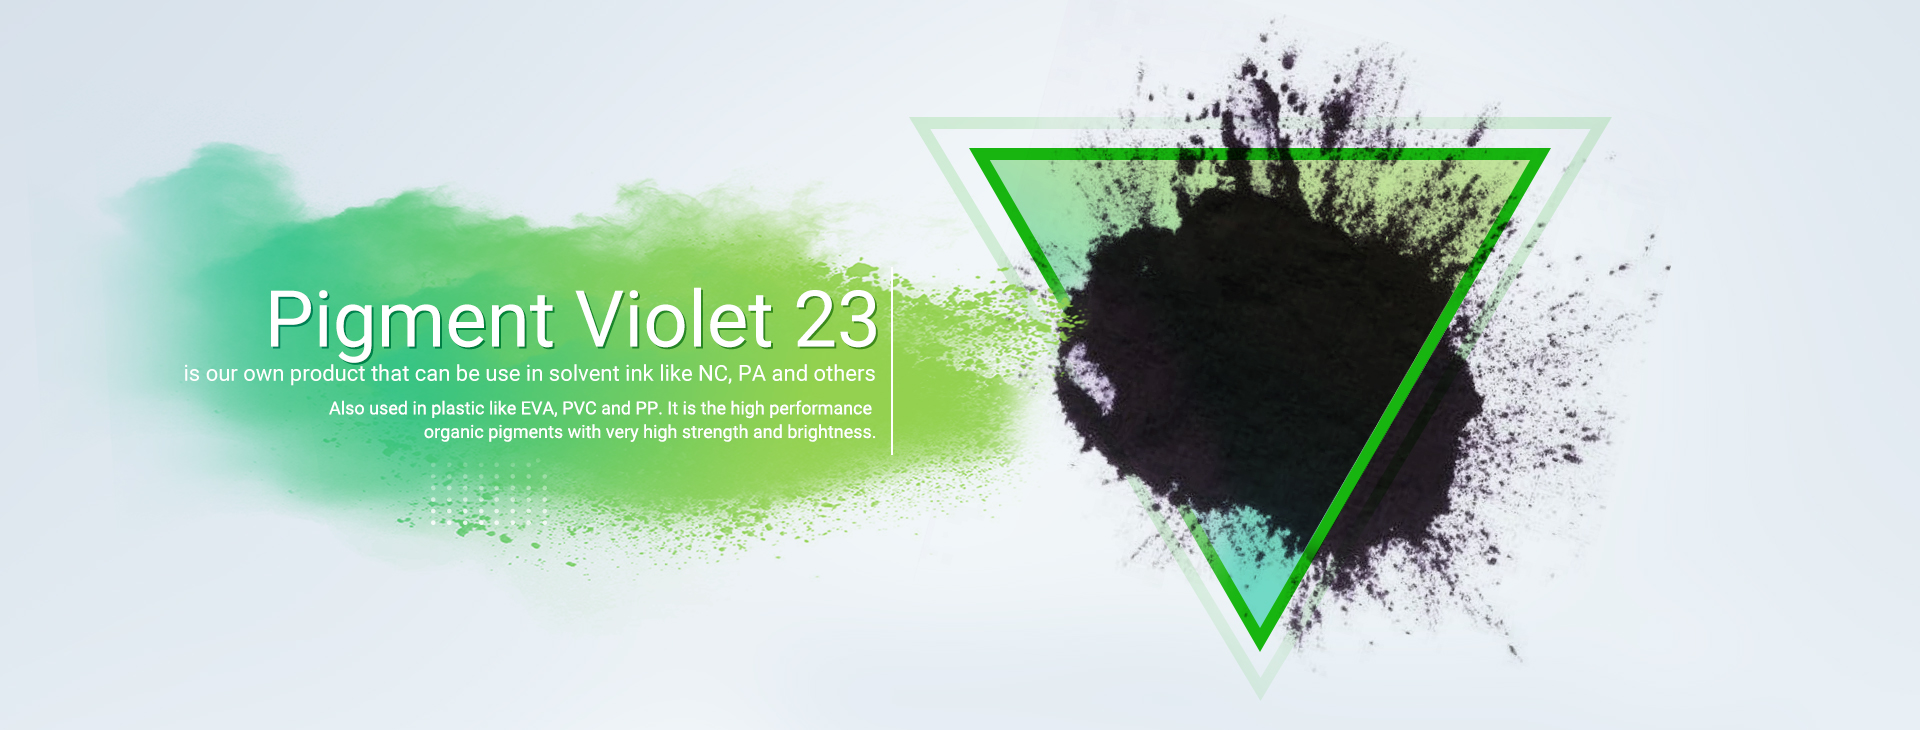 Эффективный краситель Solvent Black 27, широко используемый в производстве пластмасс.